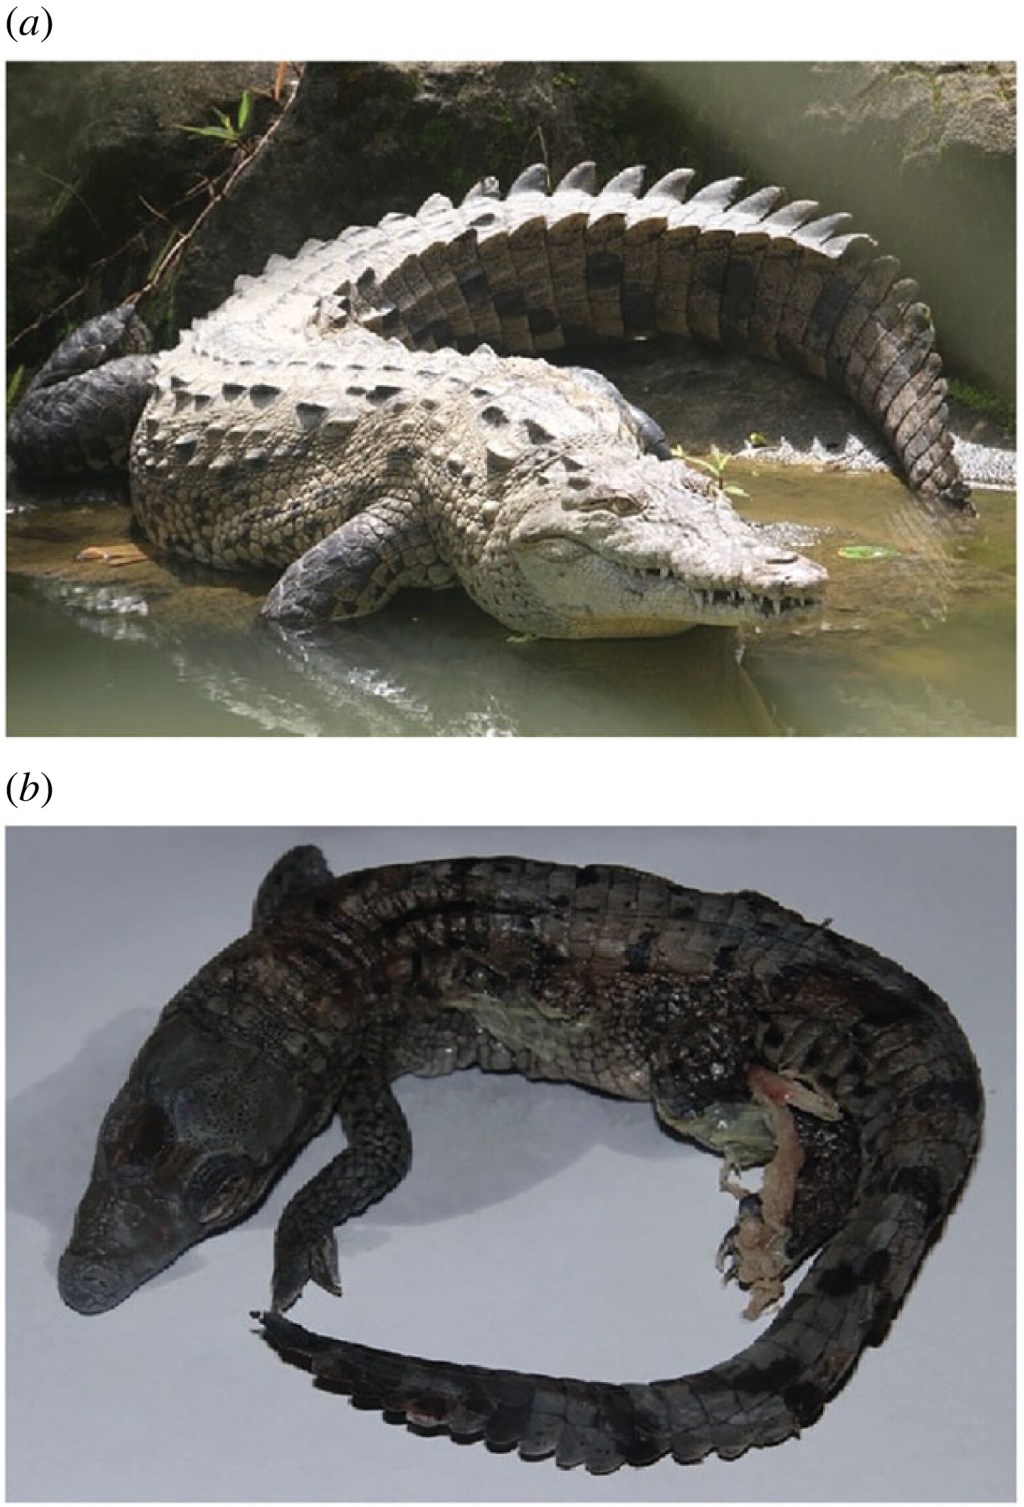 a) crocodilo fêmea que conseguiu se reproduzir individualmente; b) feto formado com material genético idêntico ao da mãe